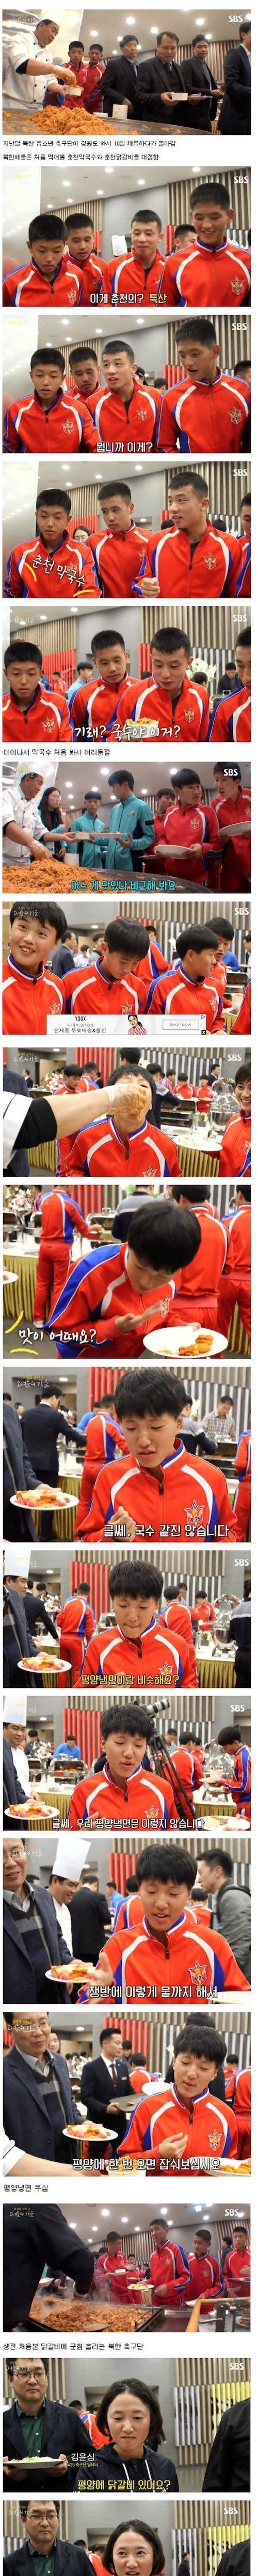 [스압] 닭갈비, 막국수 처음 먹어본 북한 선수들.jpg